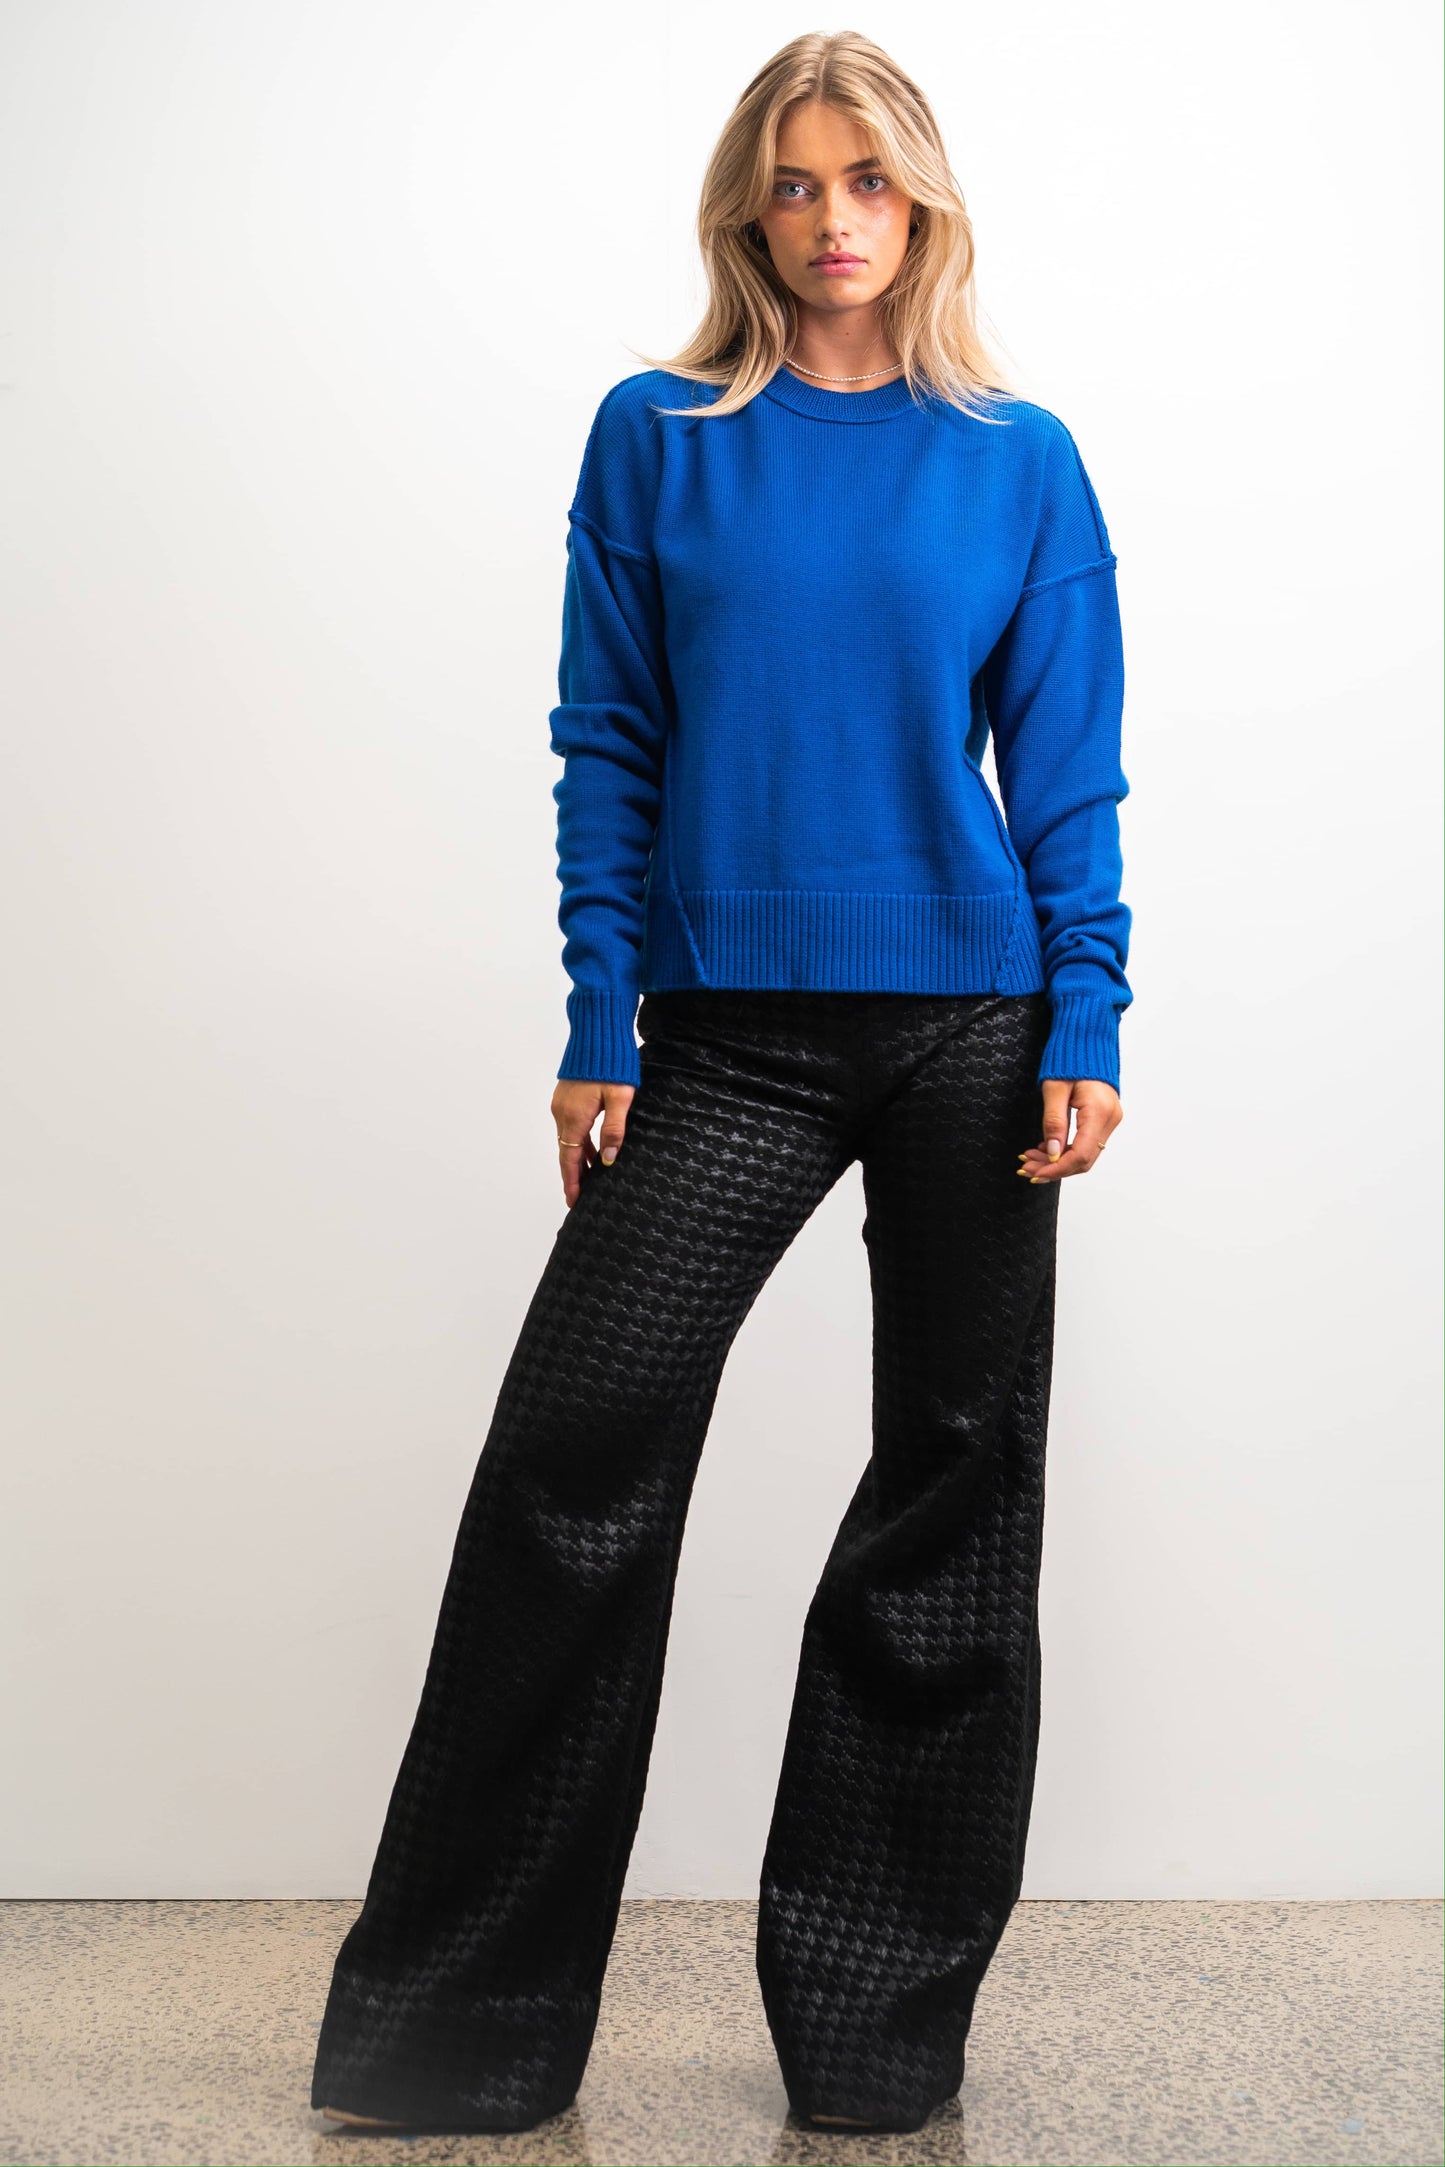 Margie Merino Wool Women's Women's Knit Jumper - Colbalt